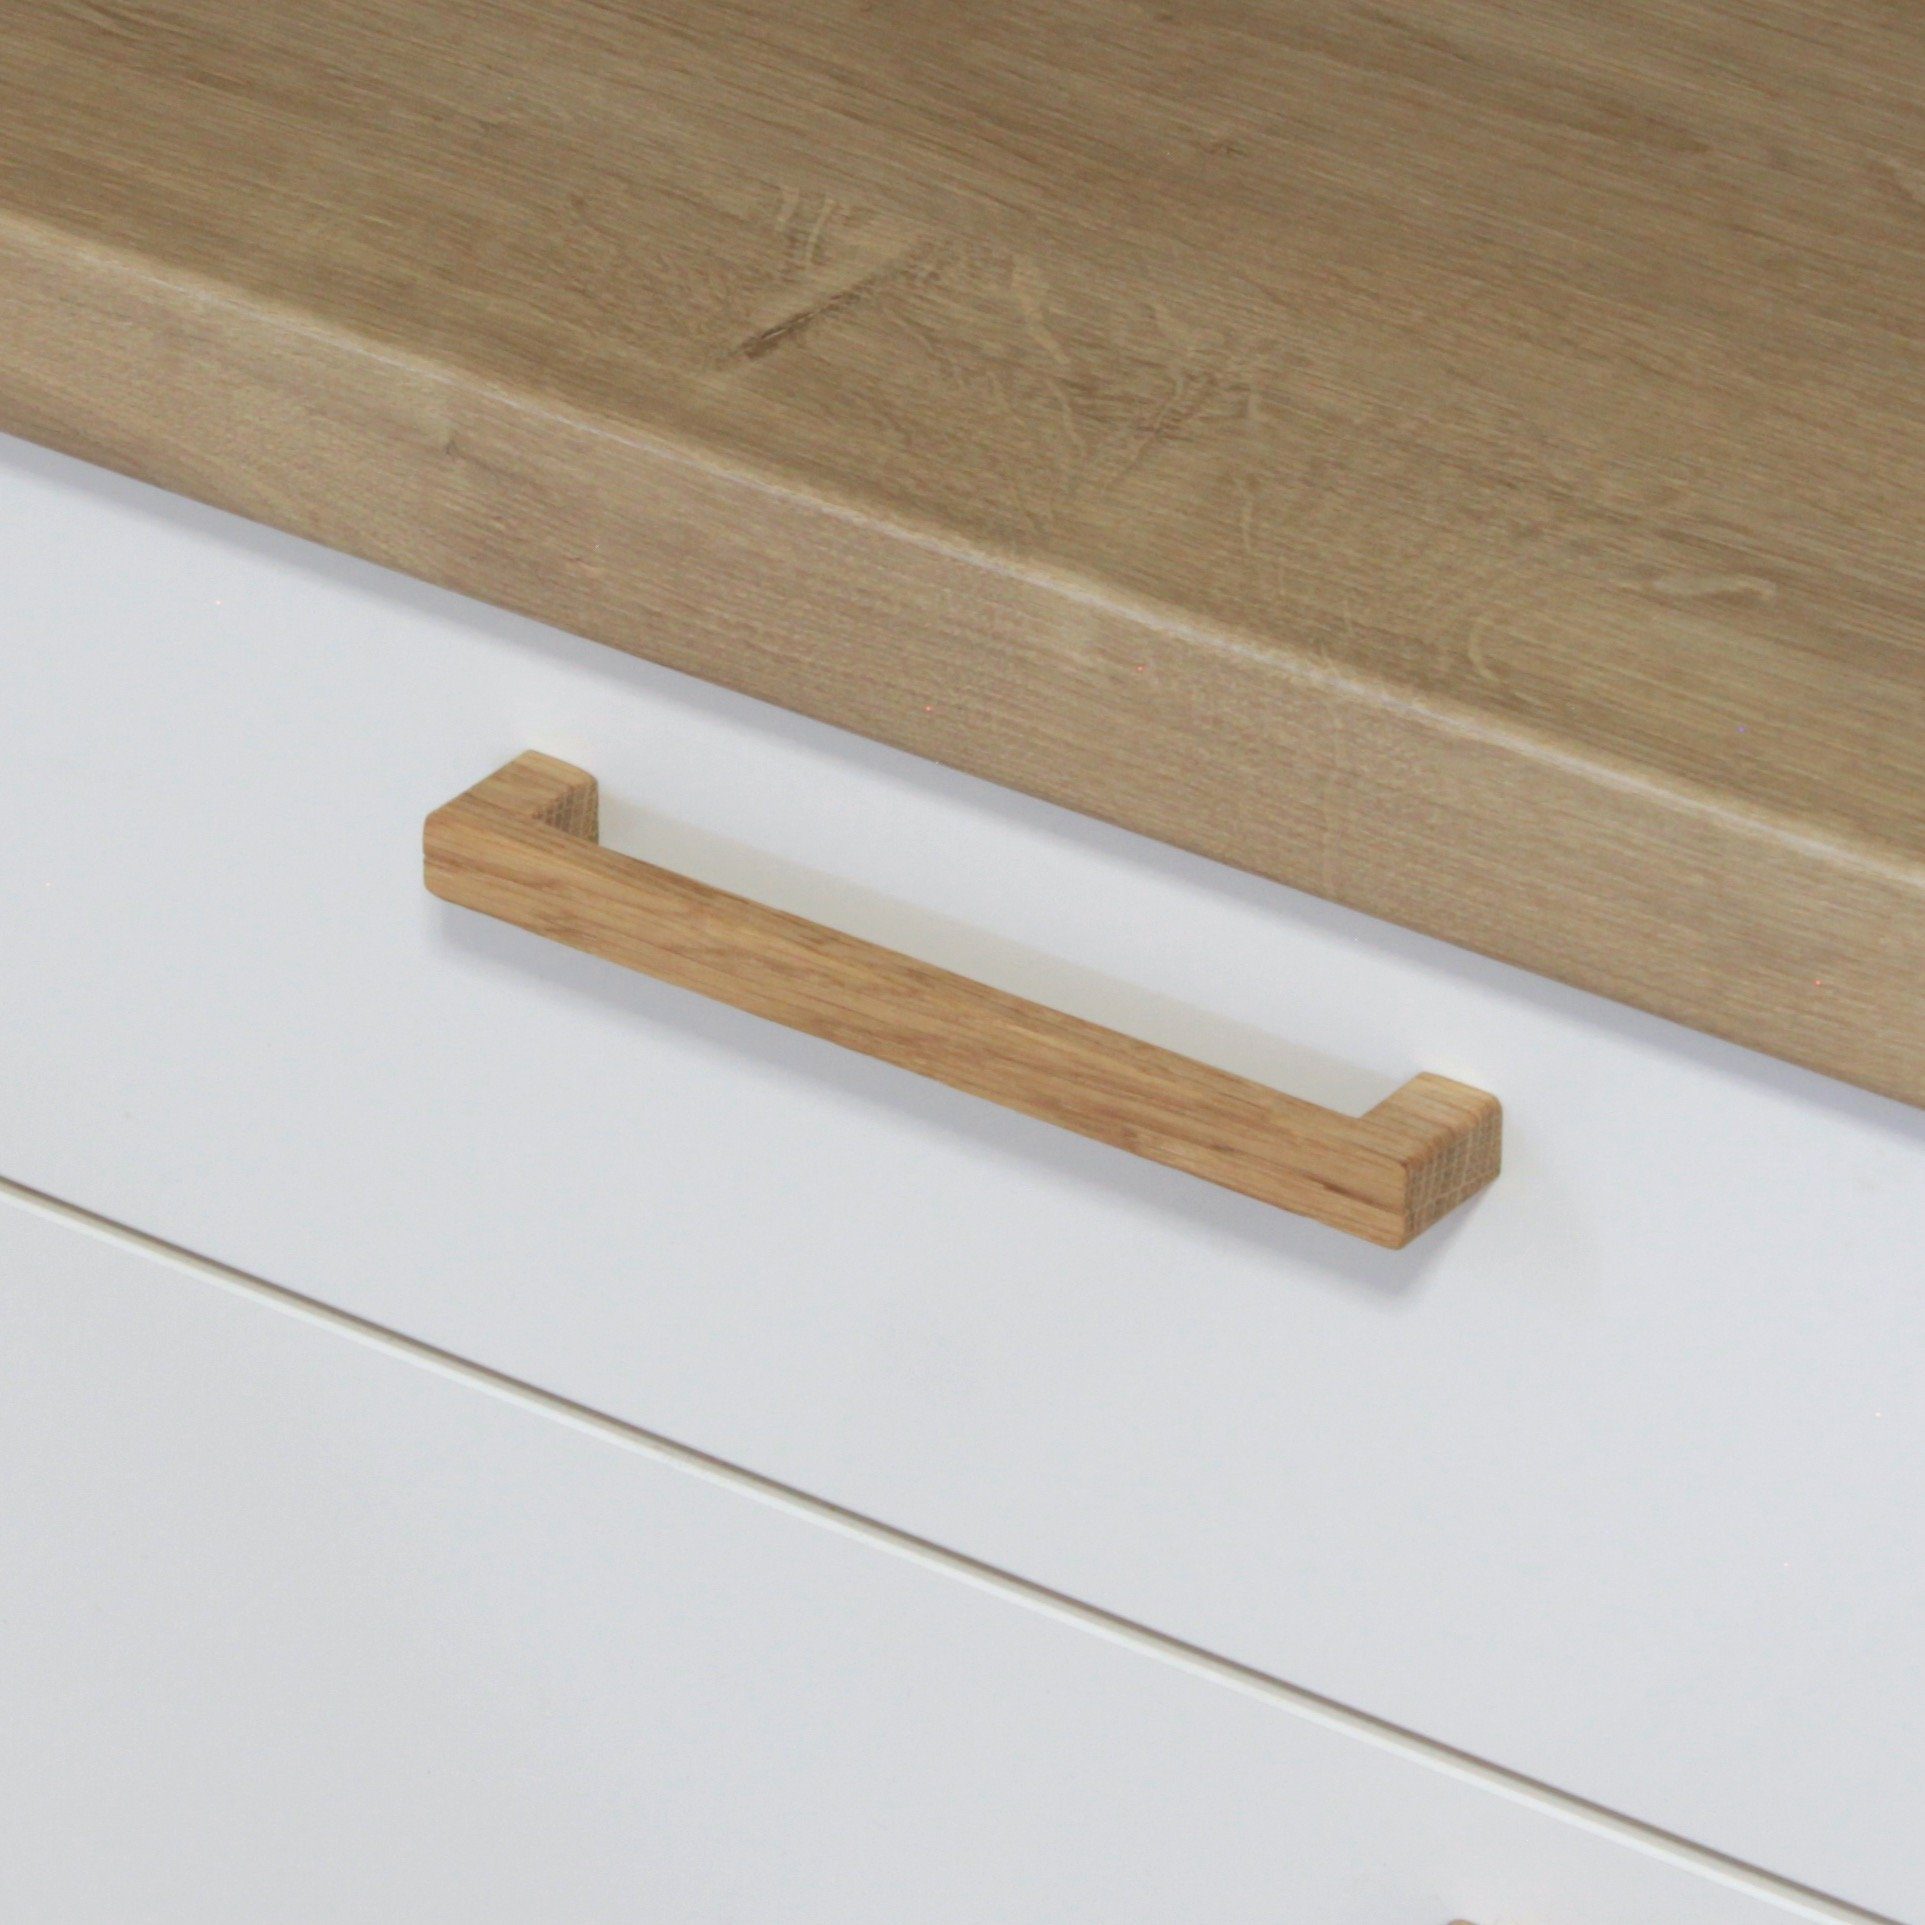 ekengriep Мебельgriff 252, Holzgriff aus Eiche für Küche, IKEA Schrank, Schubladen usw.